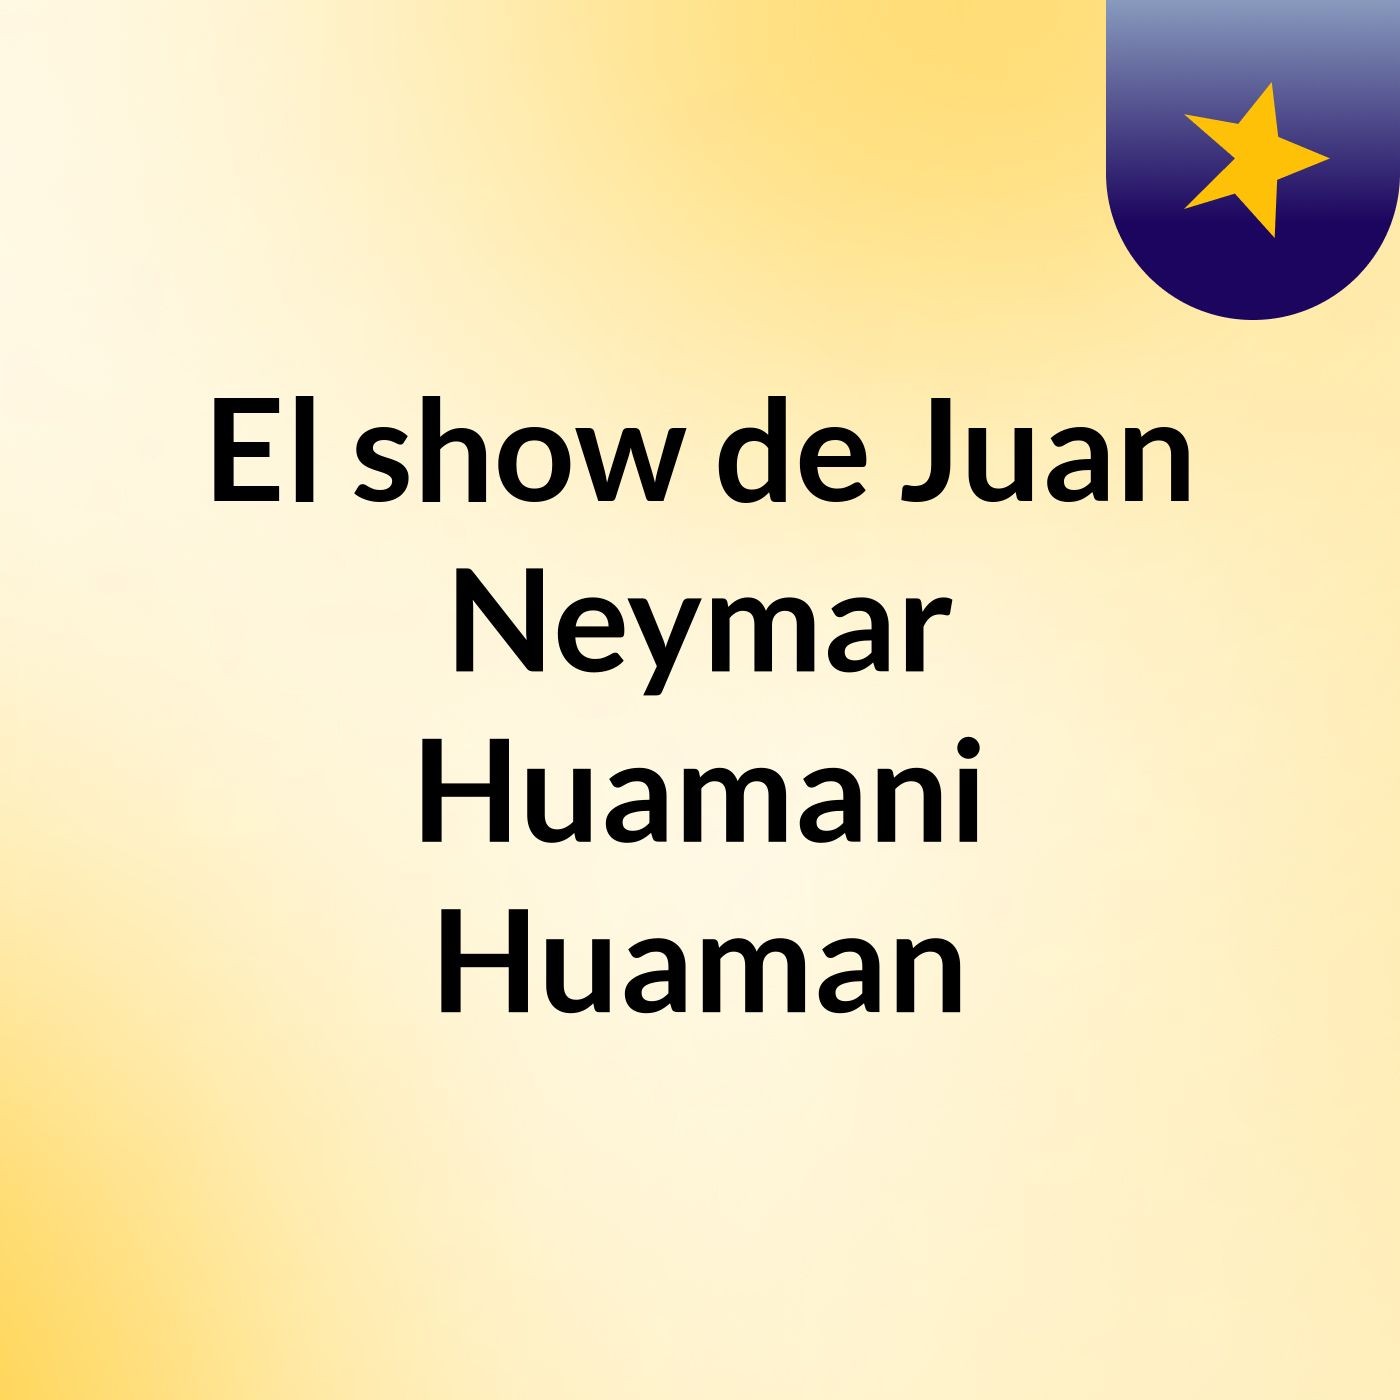 Episodio 3 - El show de Juan Neymar Huamani Huaman